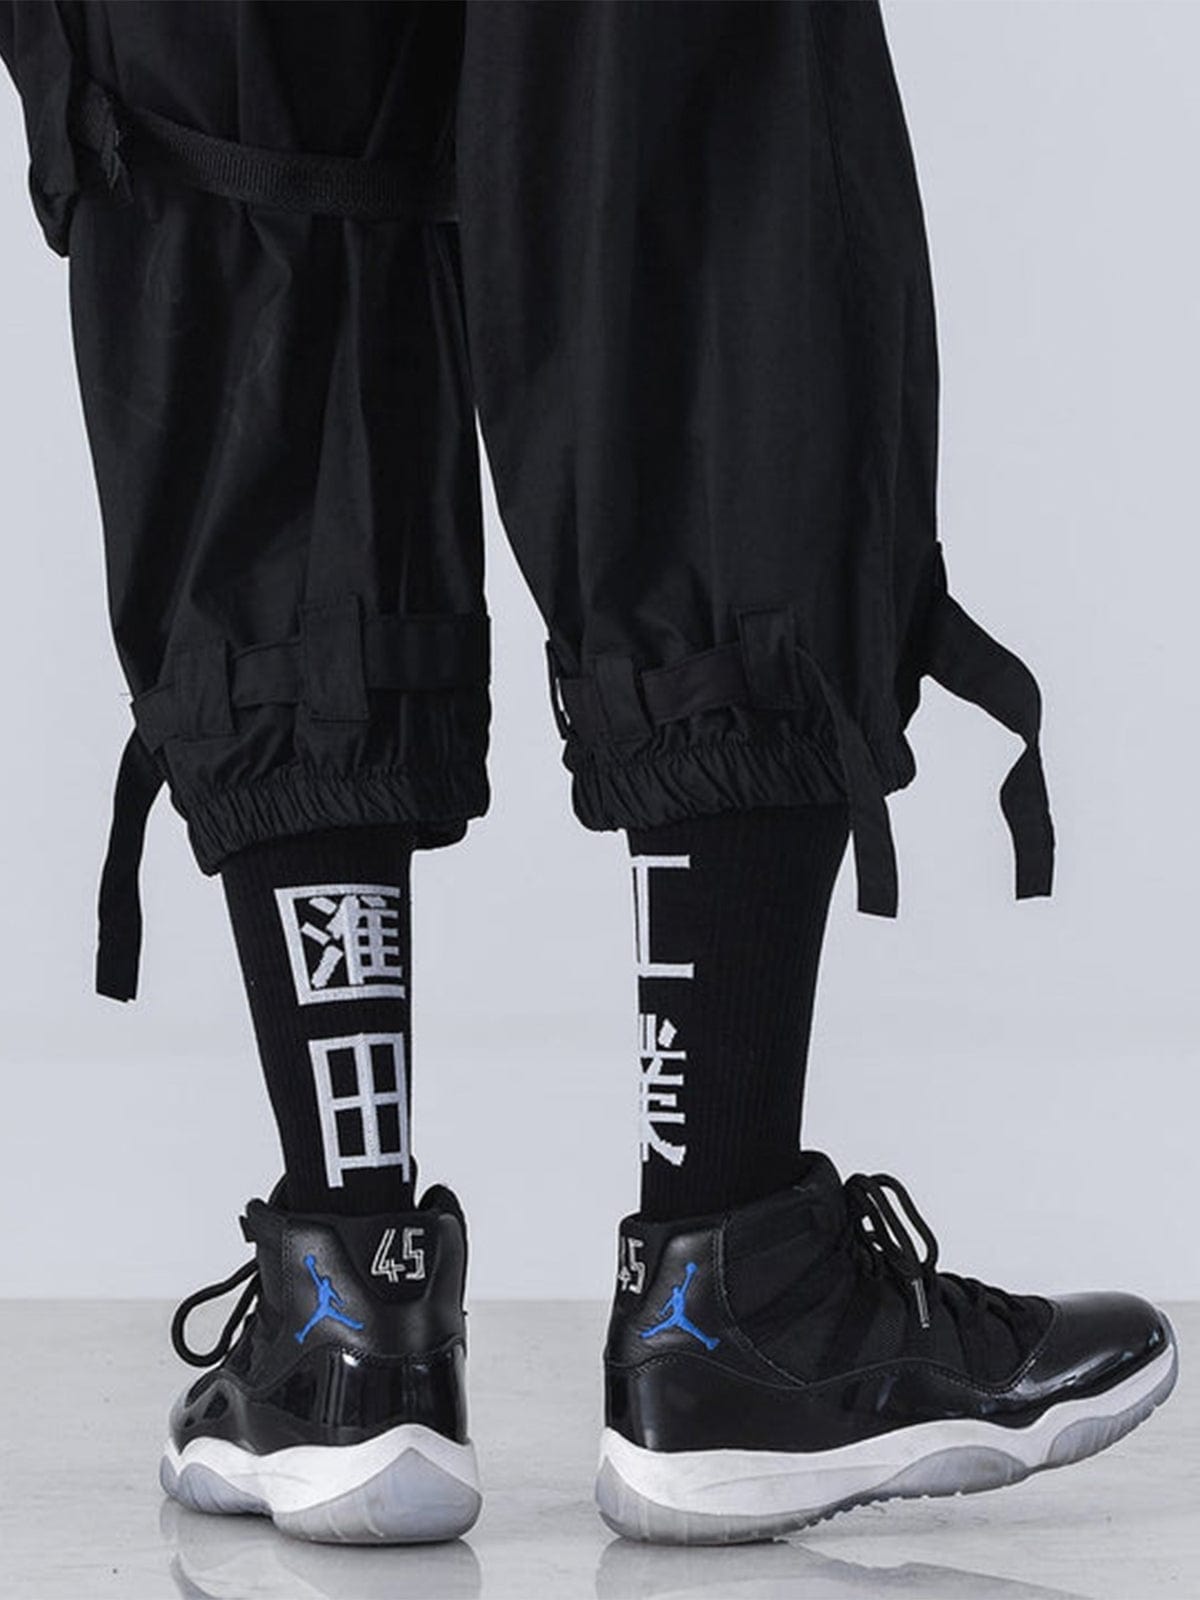 Function Huitian Industry Socks Streetwear Brand Techwear Combat Tactical YUGEN THEORY